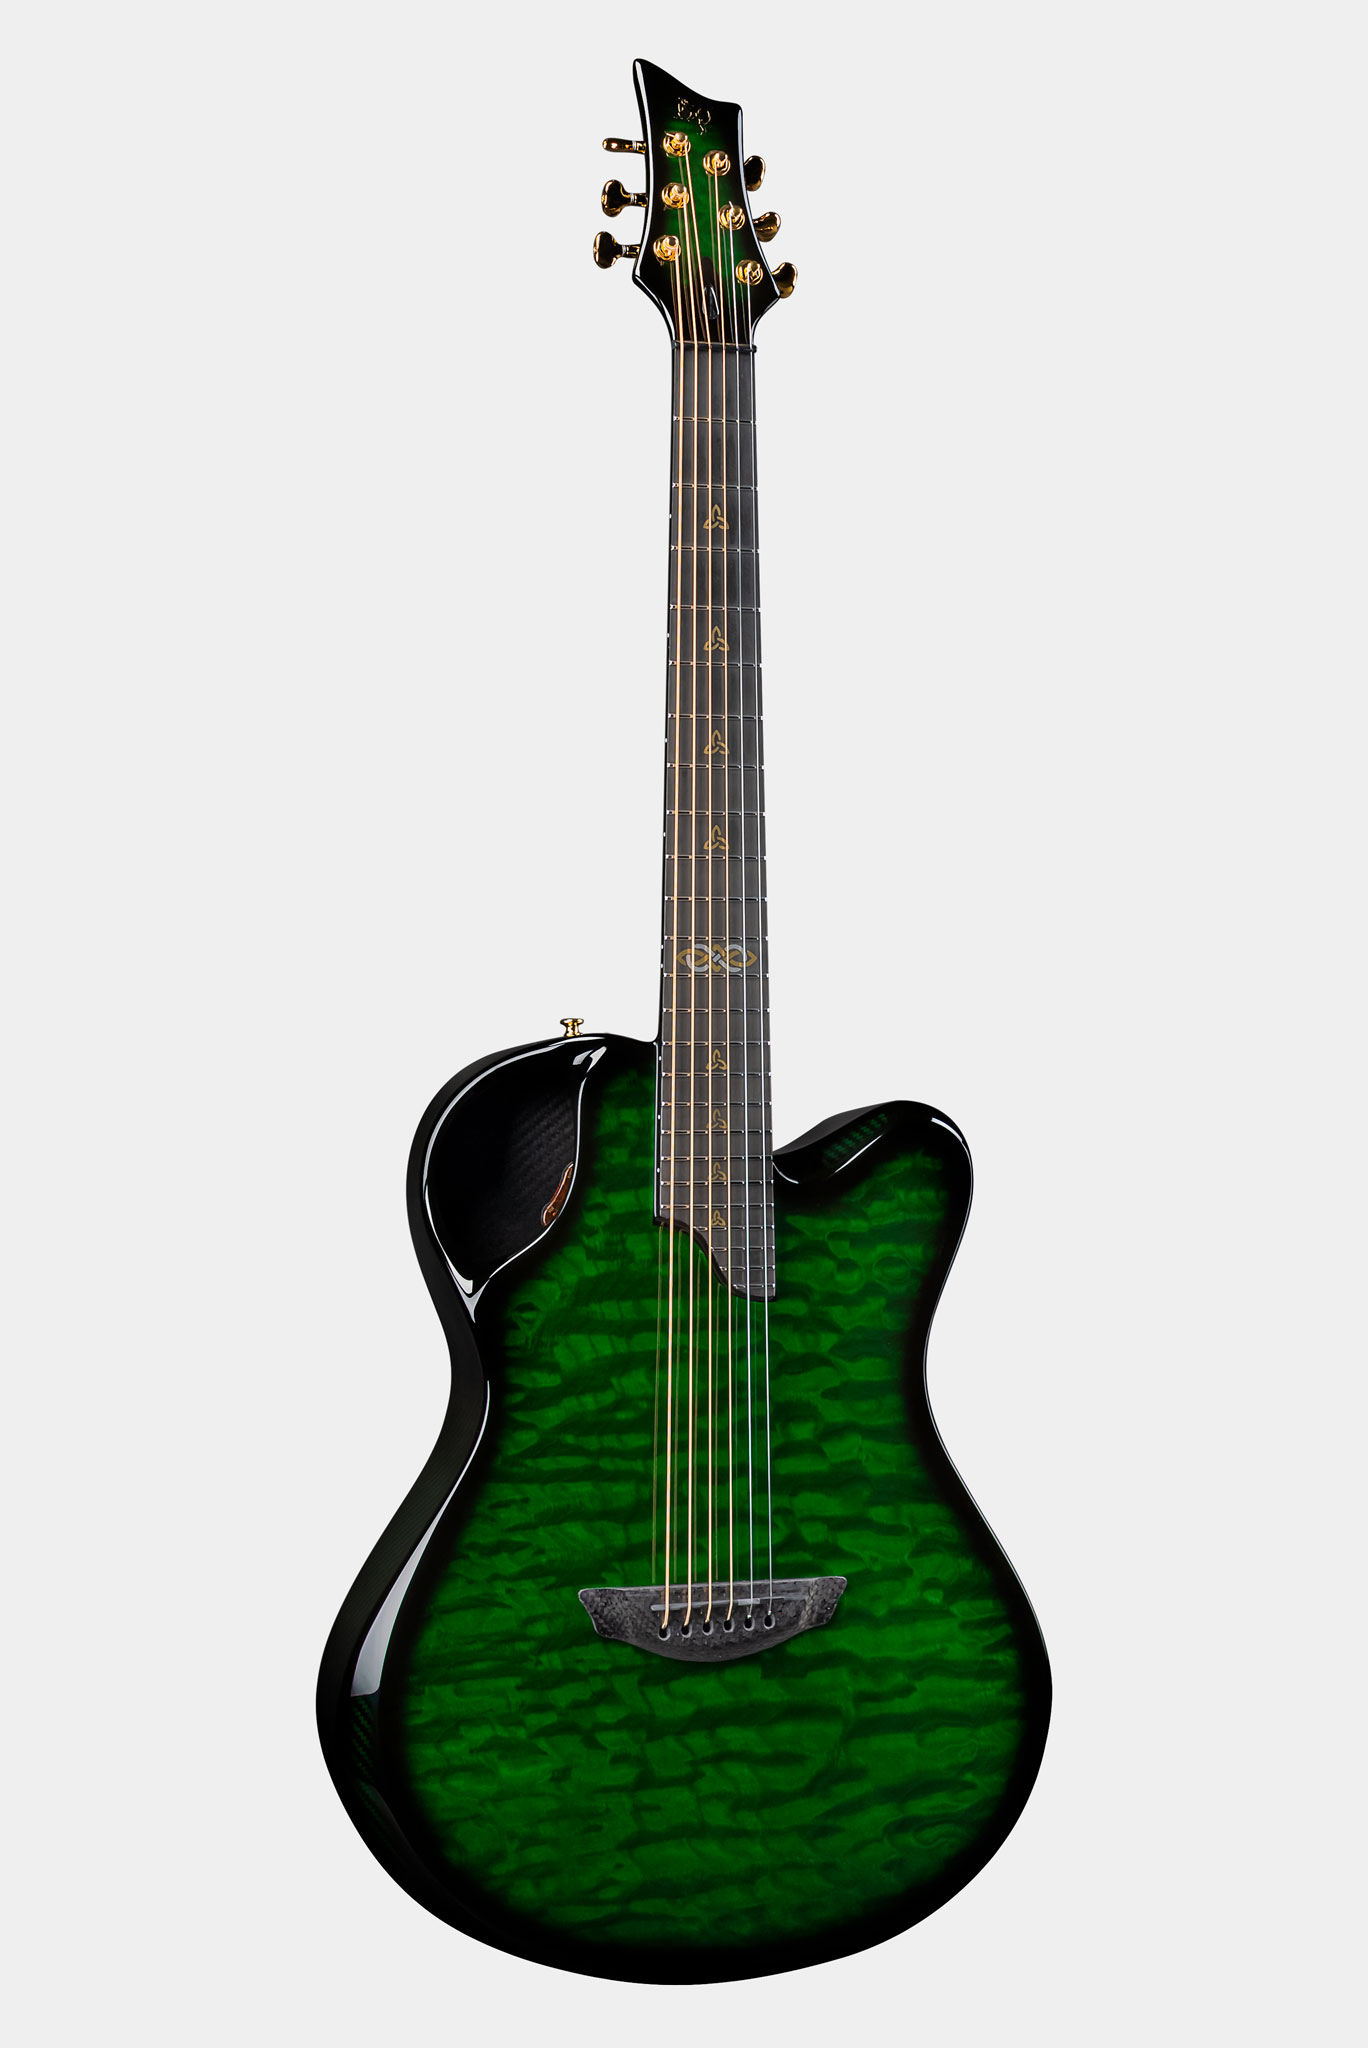 X20 - Emerald Guitars